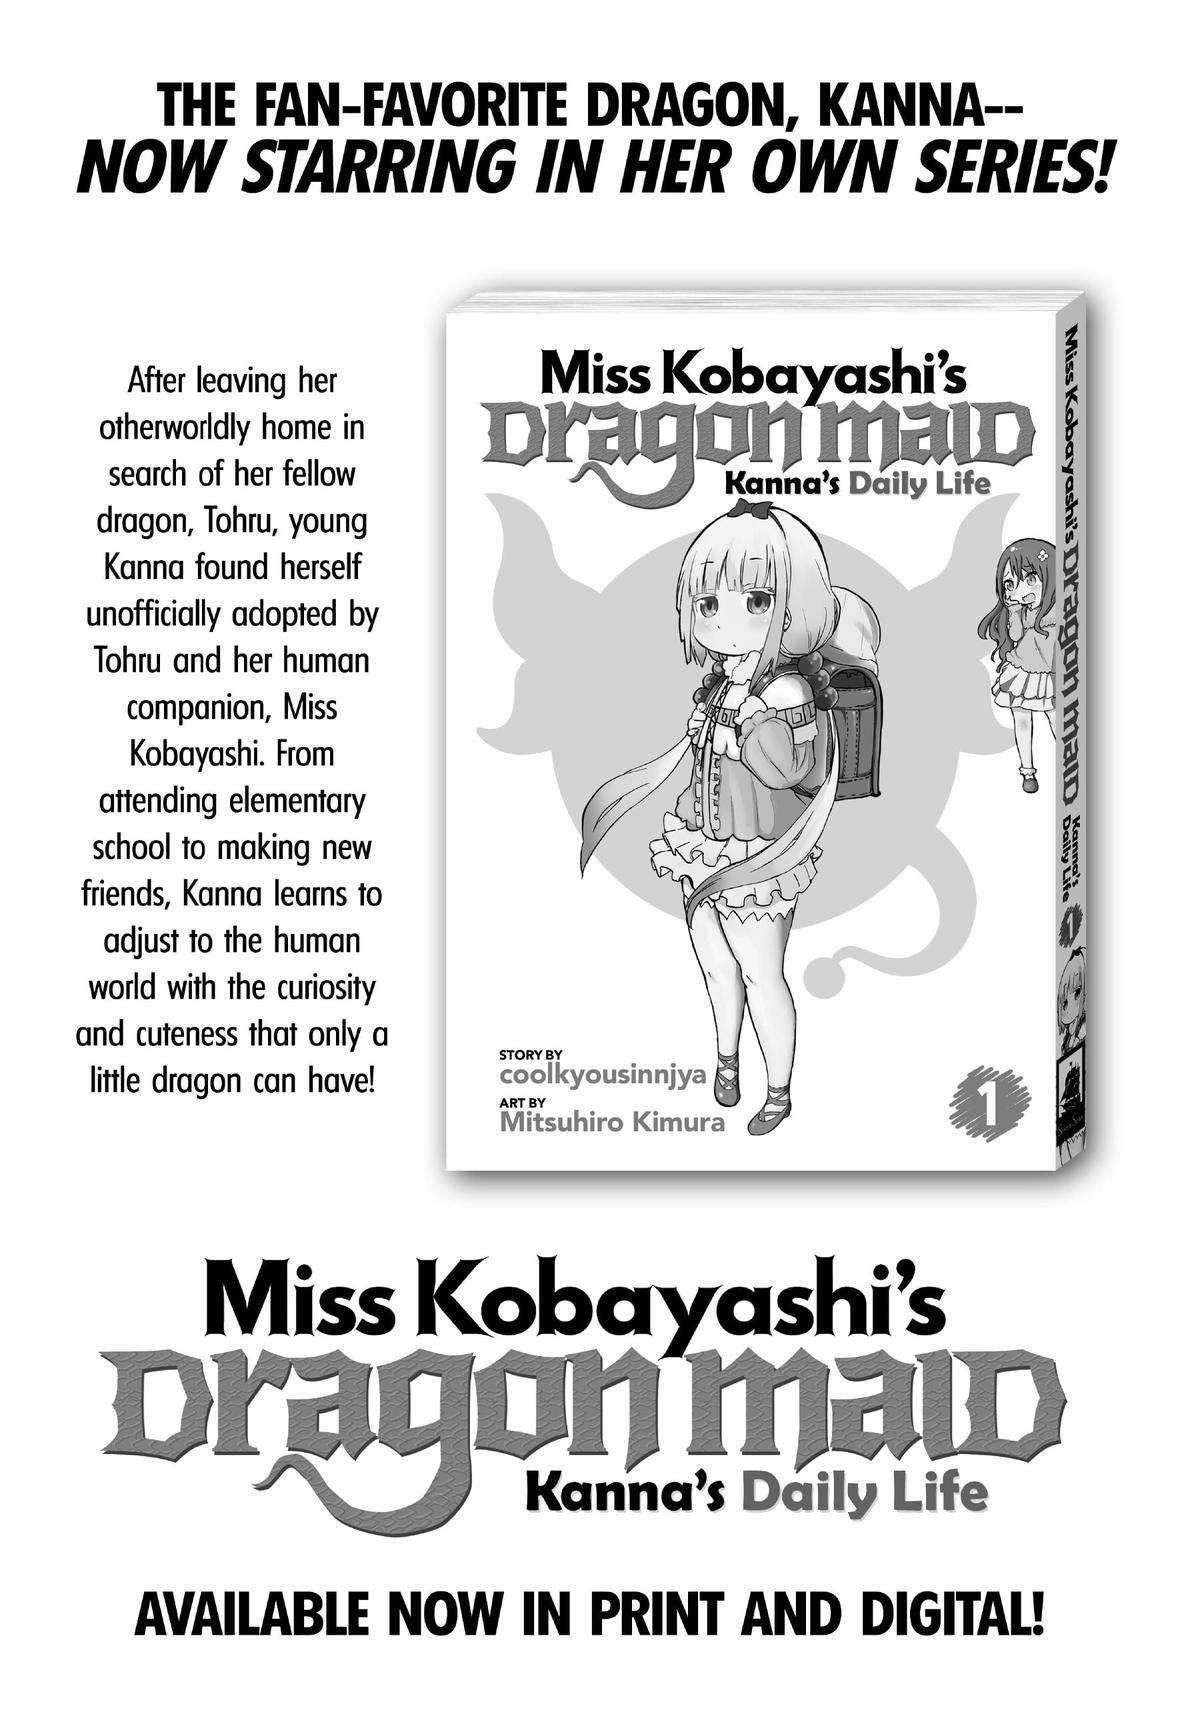 Kobayashi-san Chi no Maid Dragon: Elma OL Nikki Chapter 63